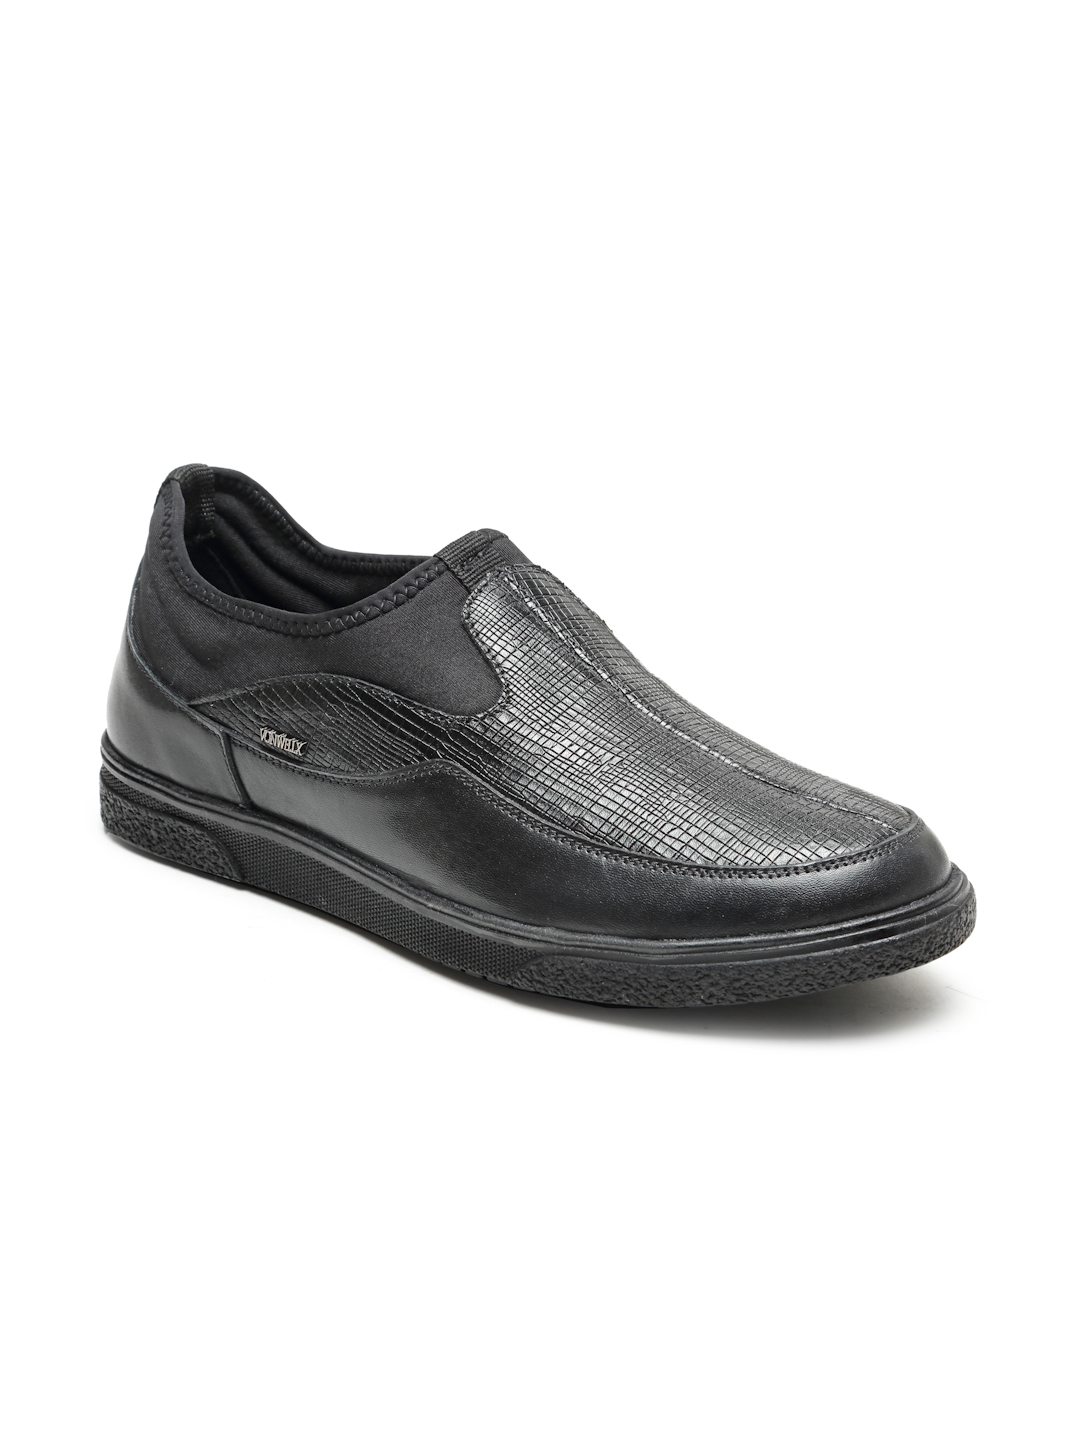 Buy Von Wellx Germany Comfort Men's Black Casual Loafers Everett Online in Hyderabad